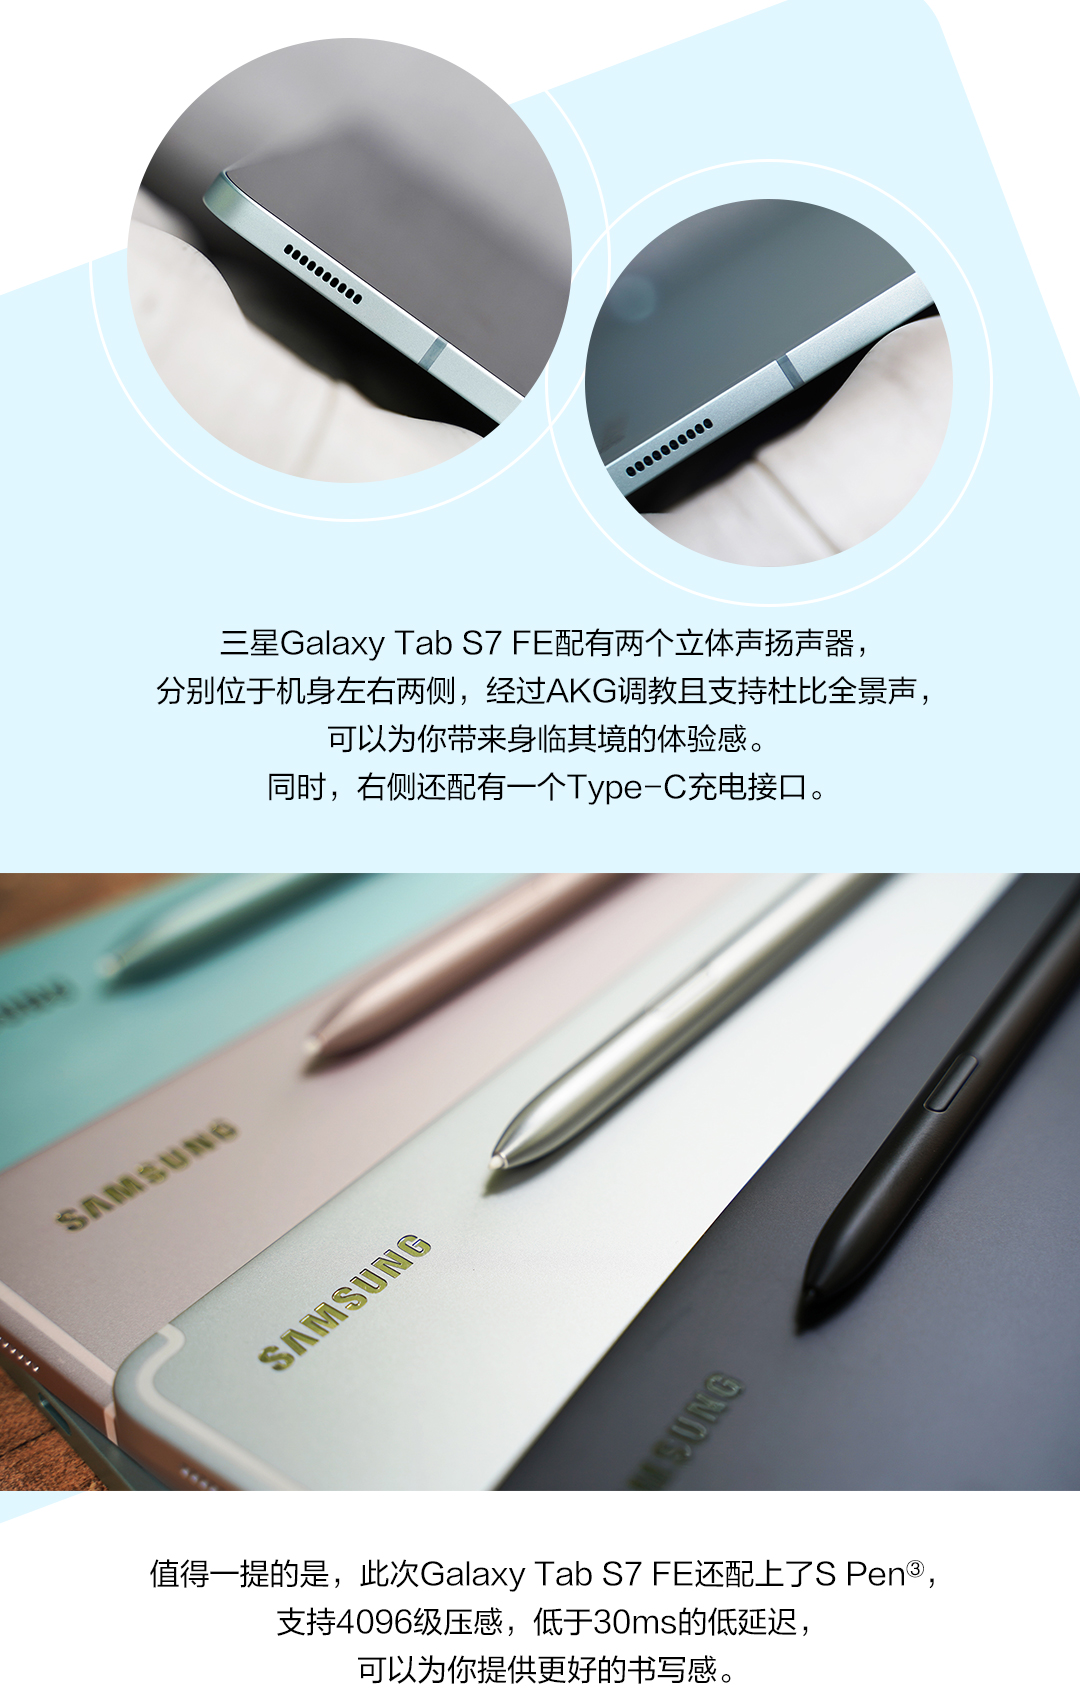 简约之美 均衡性能 三星Galaxy Tab S7 FE精美图赏